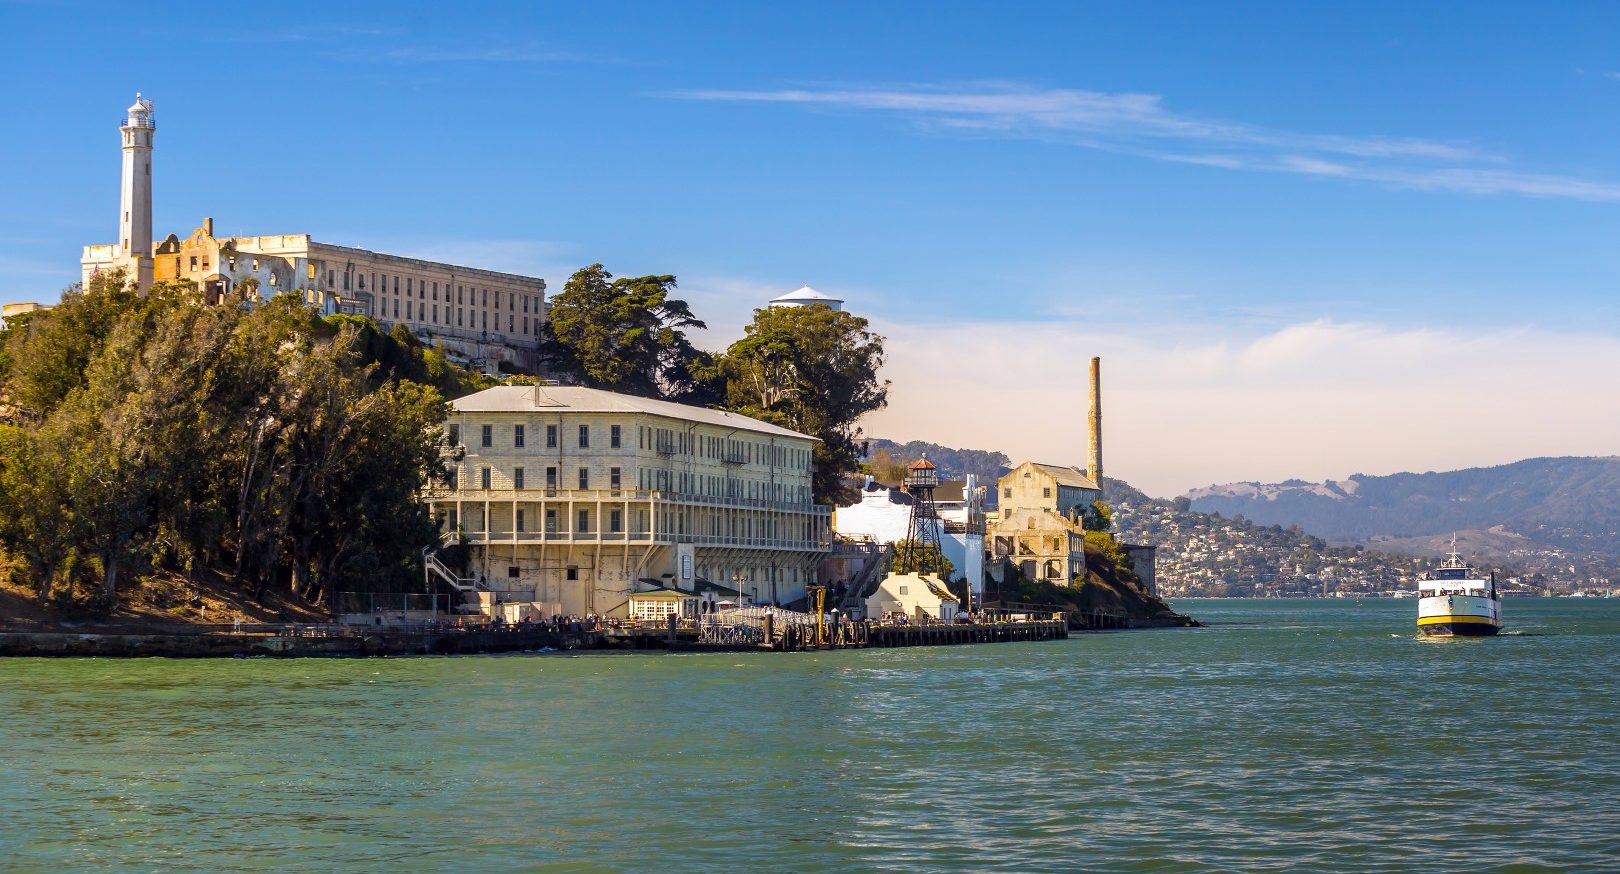 The Alcatraz Island Prison